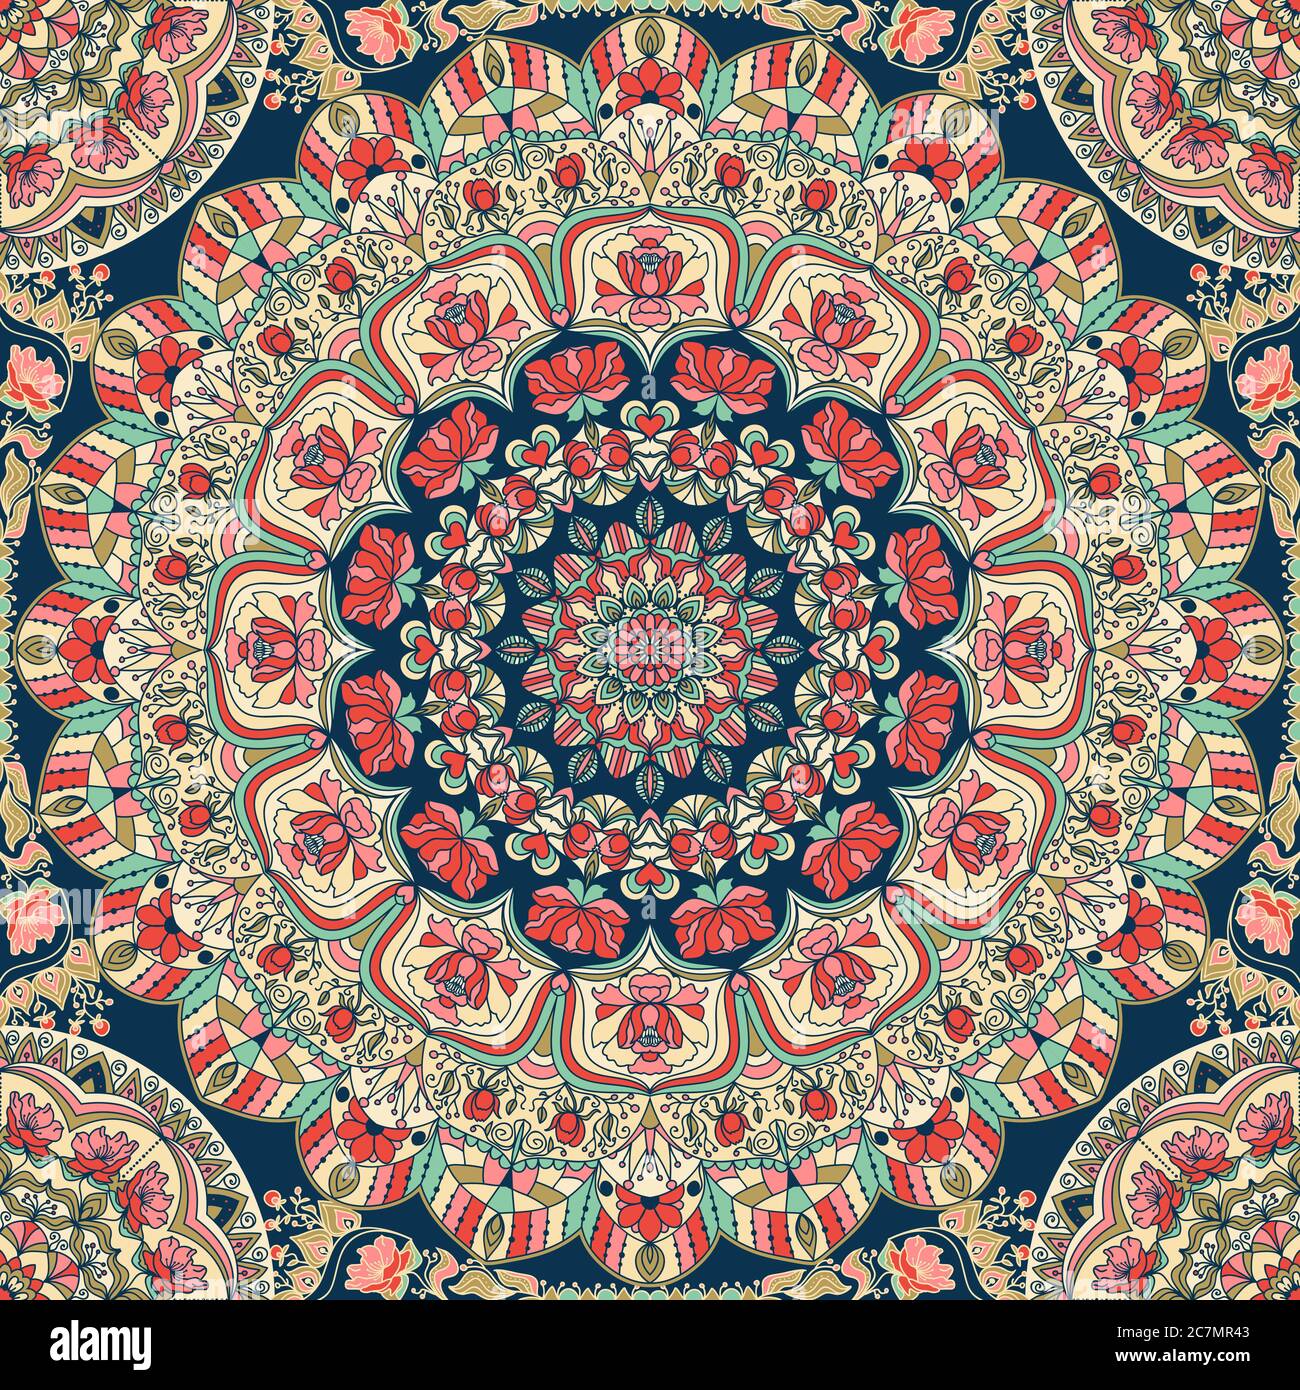 Bunte Blumen handgezeichnete Mandala. Kreis Ornament in Retro-Farben. Traditionelles orientalisches Muster, Vektorgrafik. Stock Vektor